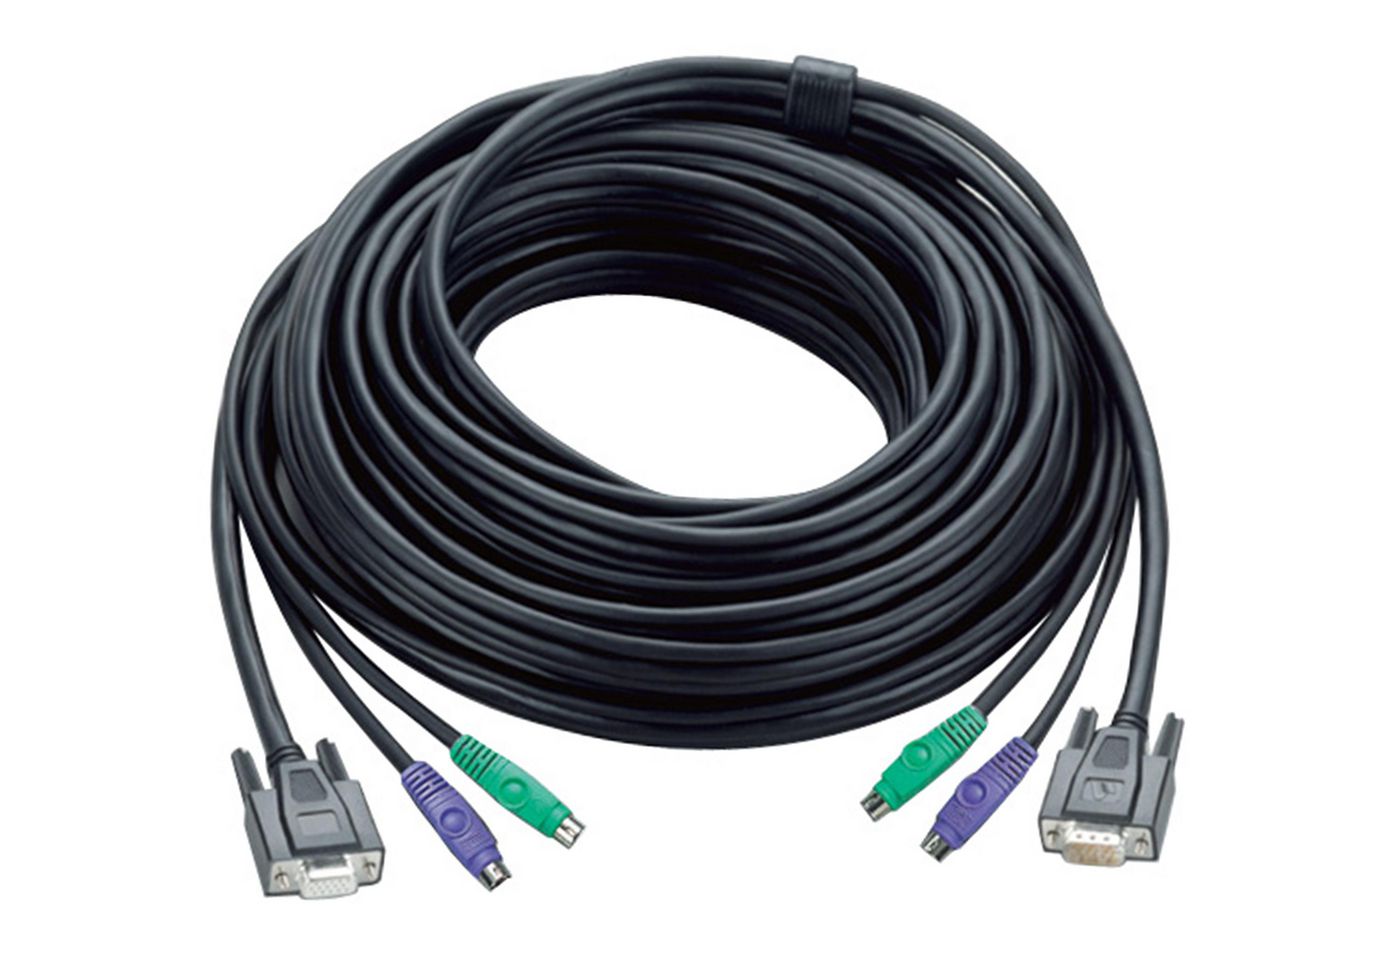 Aten 2L-1010P Video Extend Cable 10m 